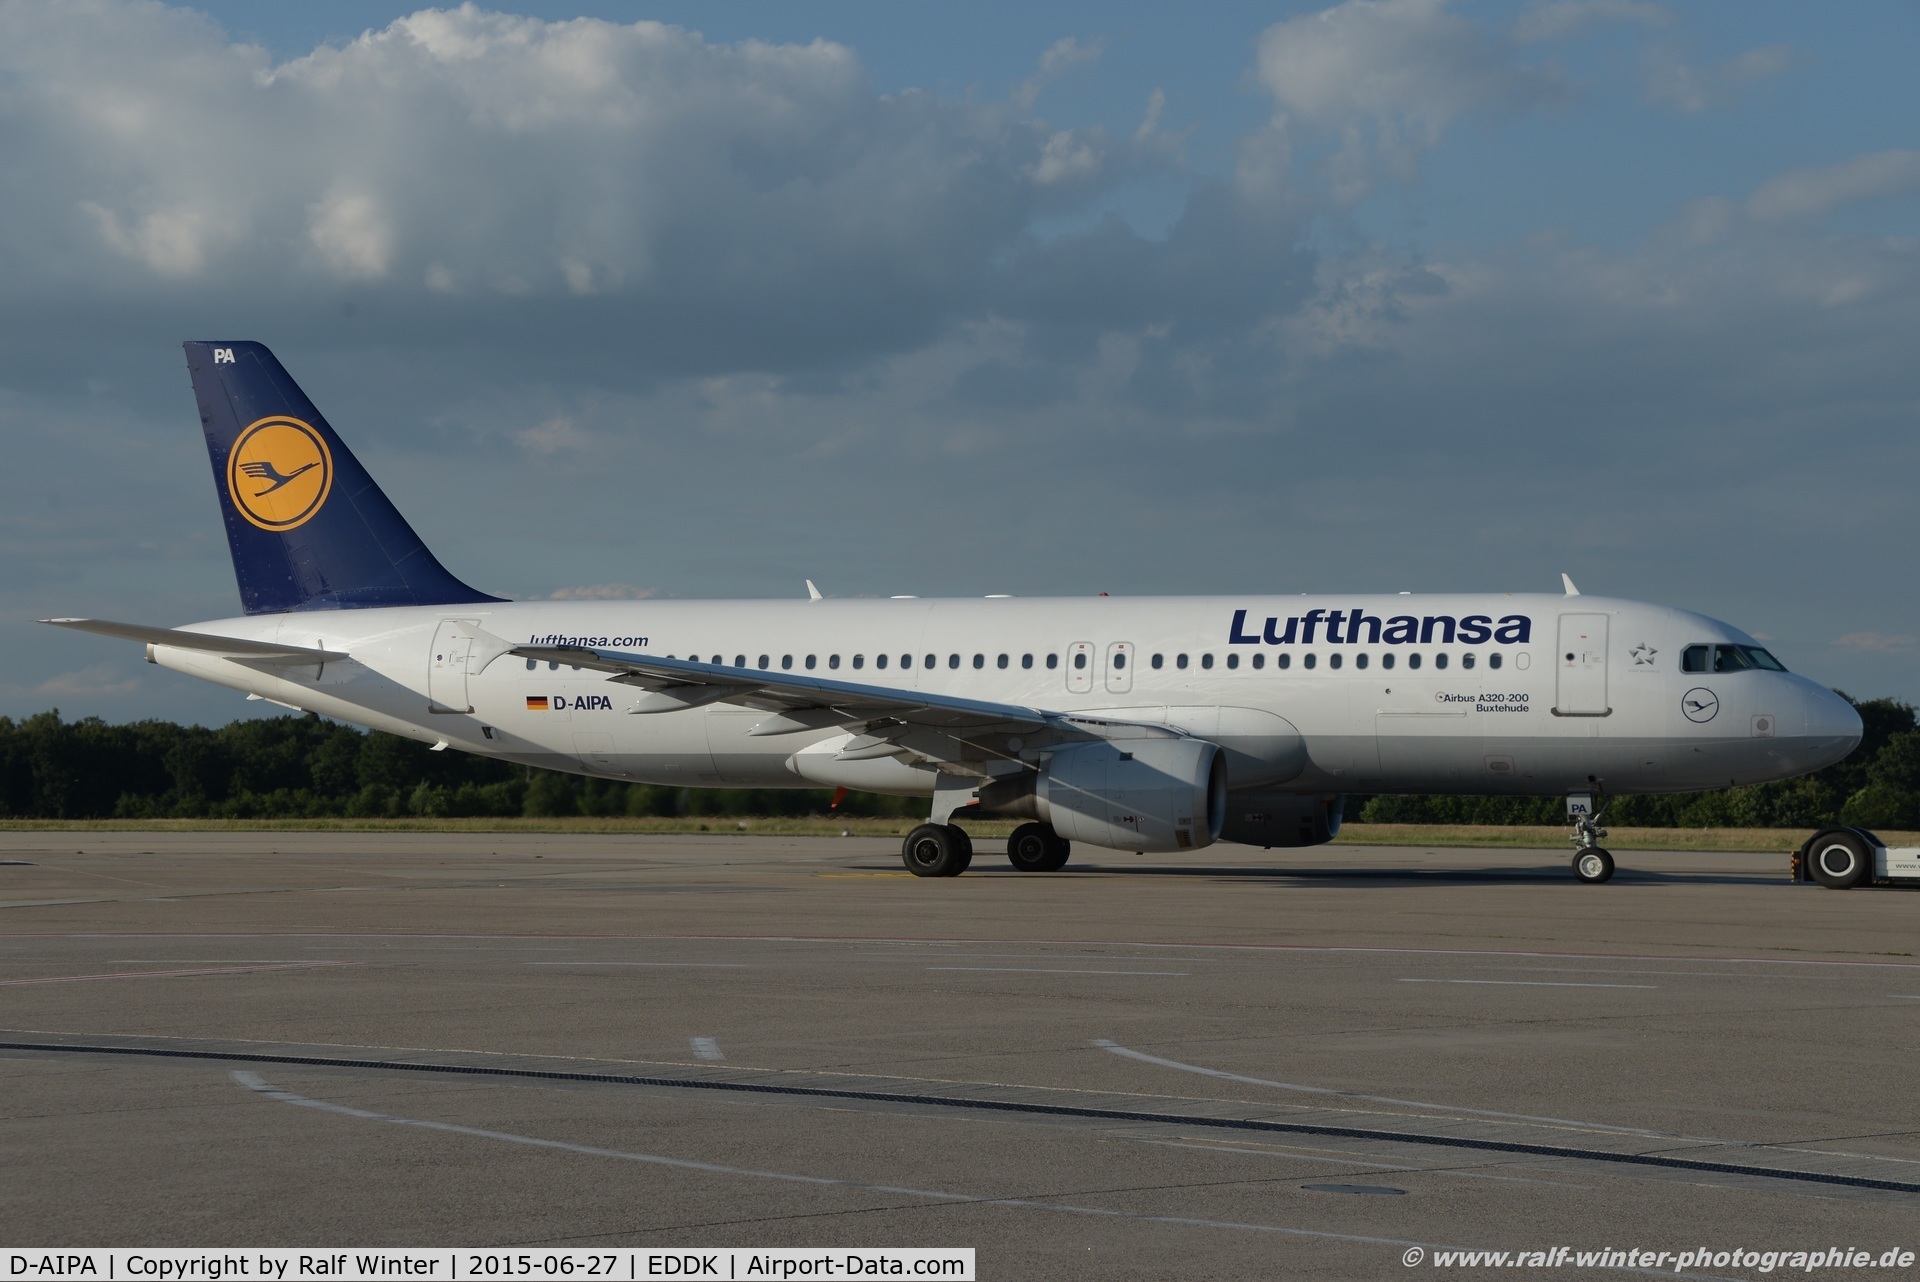 D-AIPA, 1989 Airbus A320-211 C/N 0069, Airbus A320-211 - LH DLH Lufthansa 'Buxtehude' - 69 - D-AIPA - 27.06.2015 - CGN